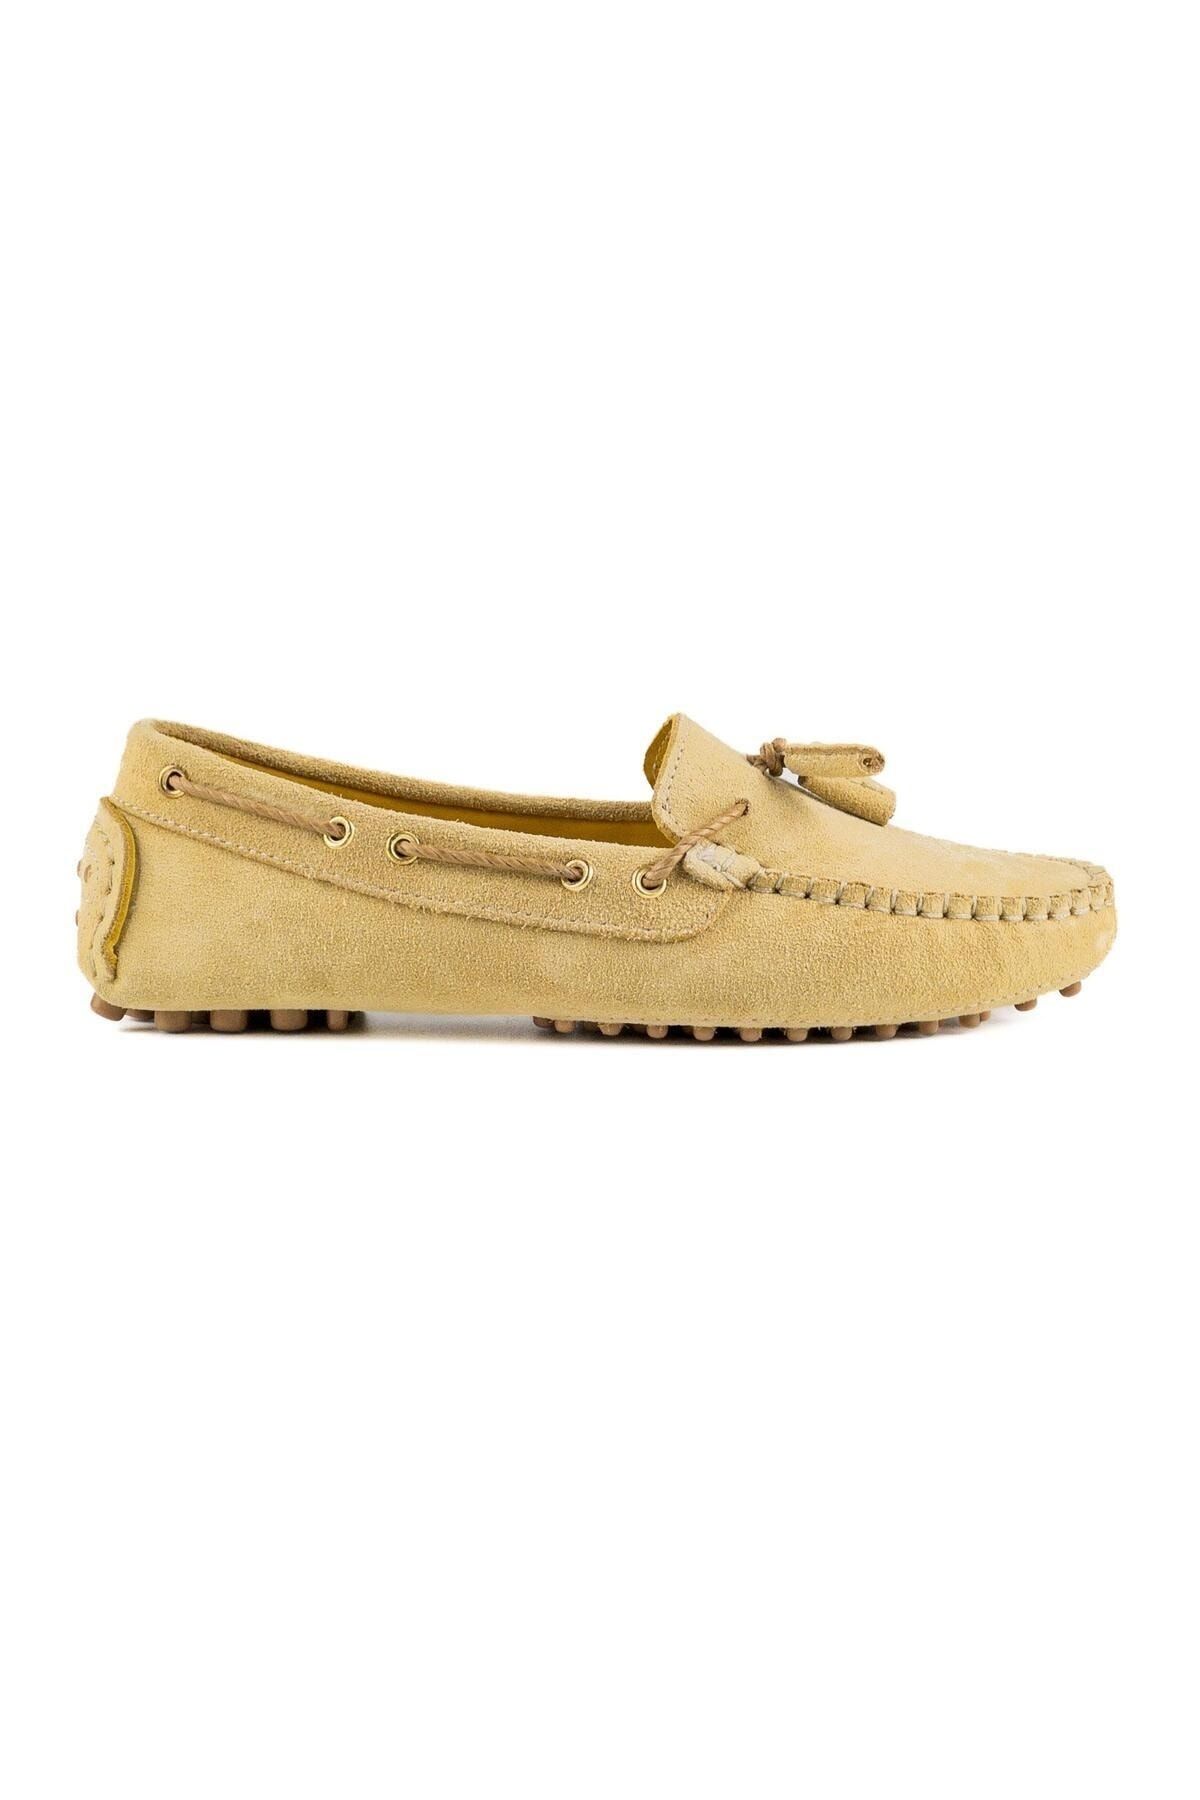 TEZCAN KUNDURA Samos Sarı Hakiki Süet Deri Loafer Günlük Kadın Ayakkabı